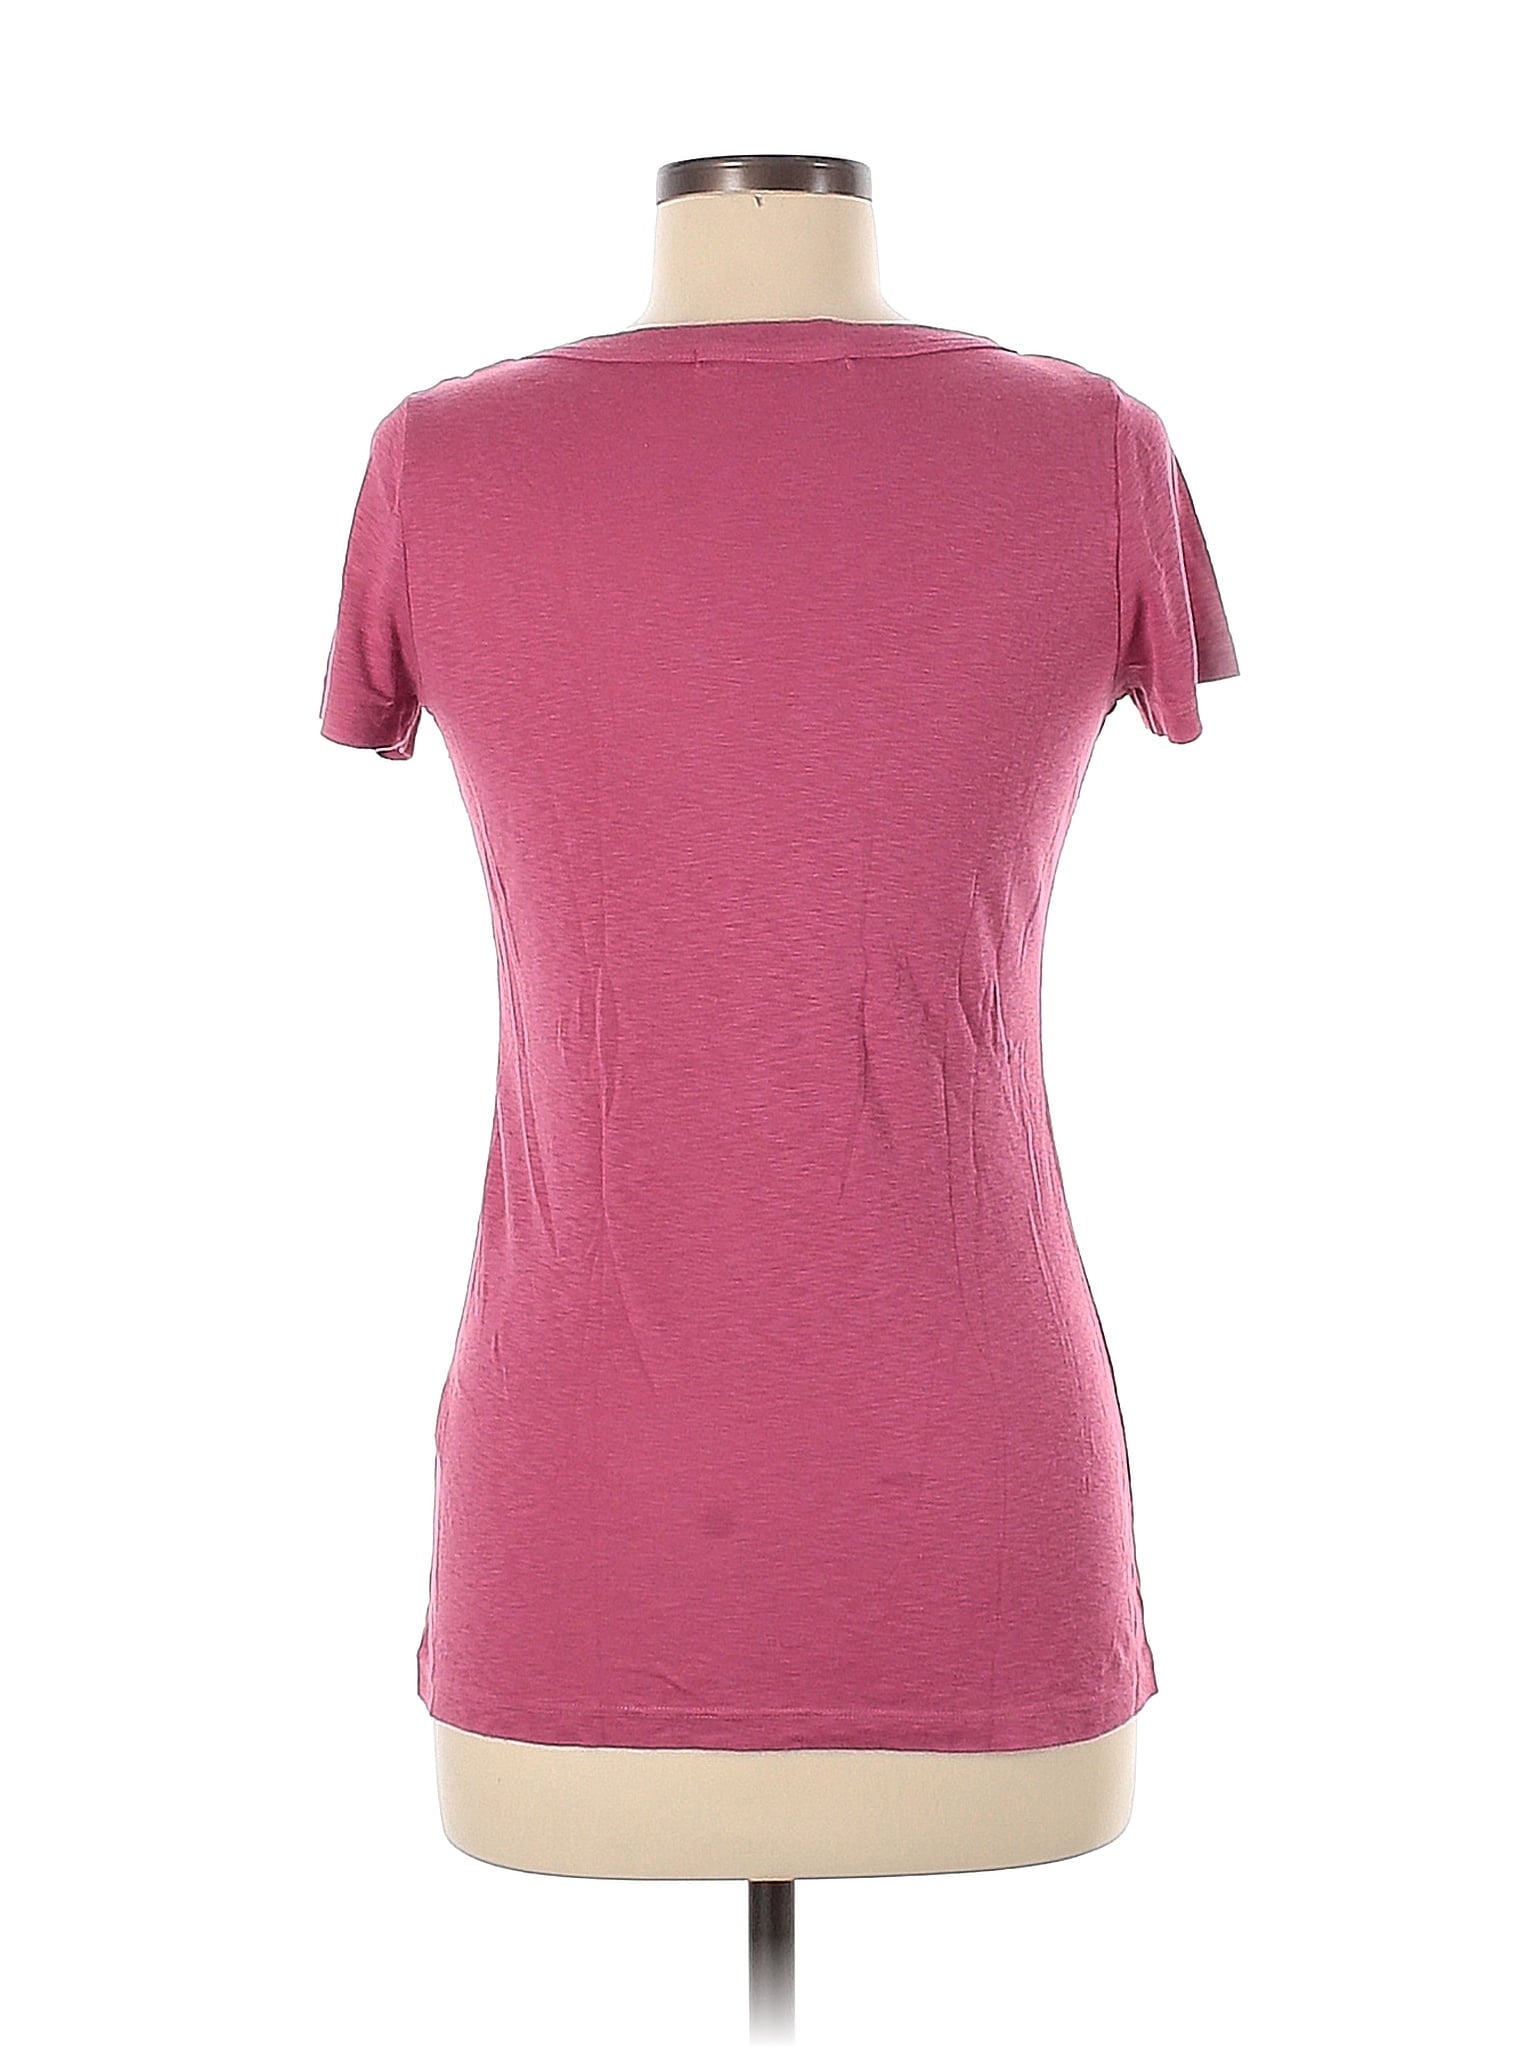 Short Sleeve T Shirt size - One Size